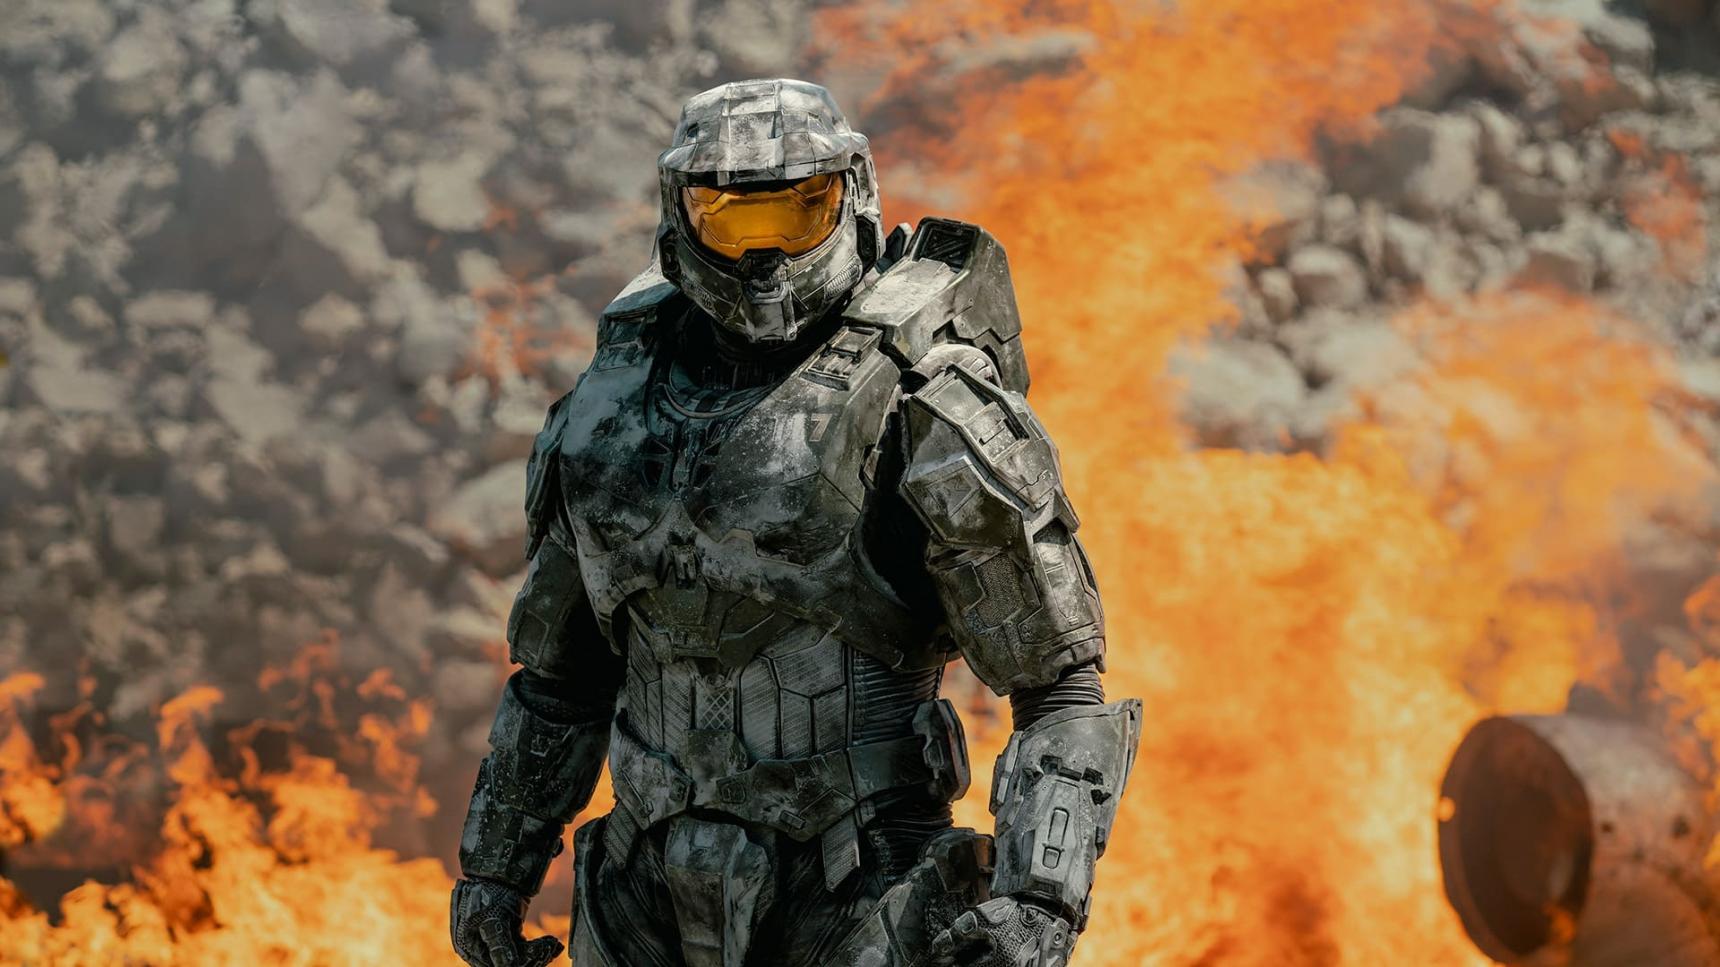 Poster del episodio 5 de Halo online